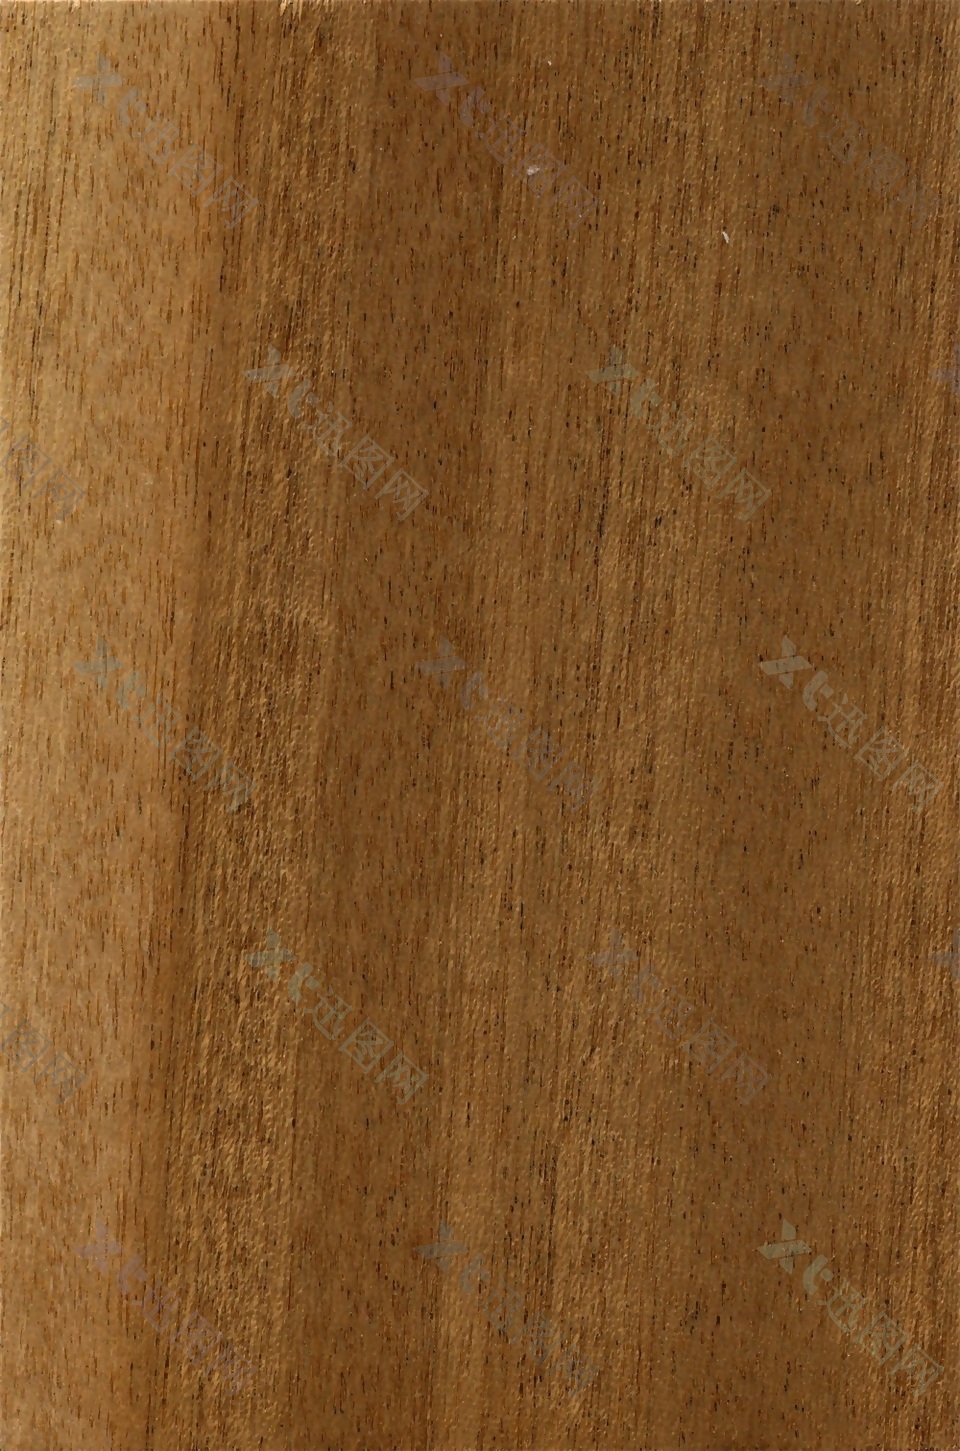 现代实用的浅棕色木纹贴图